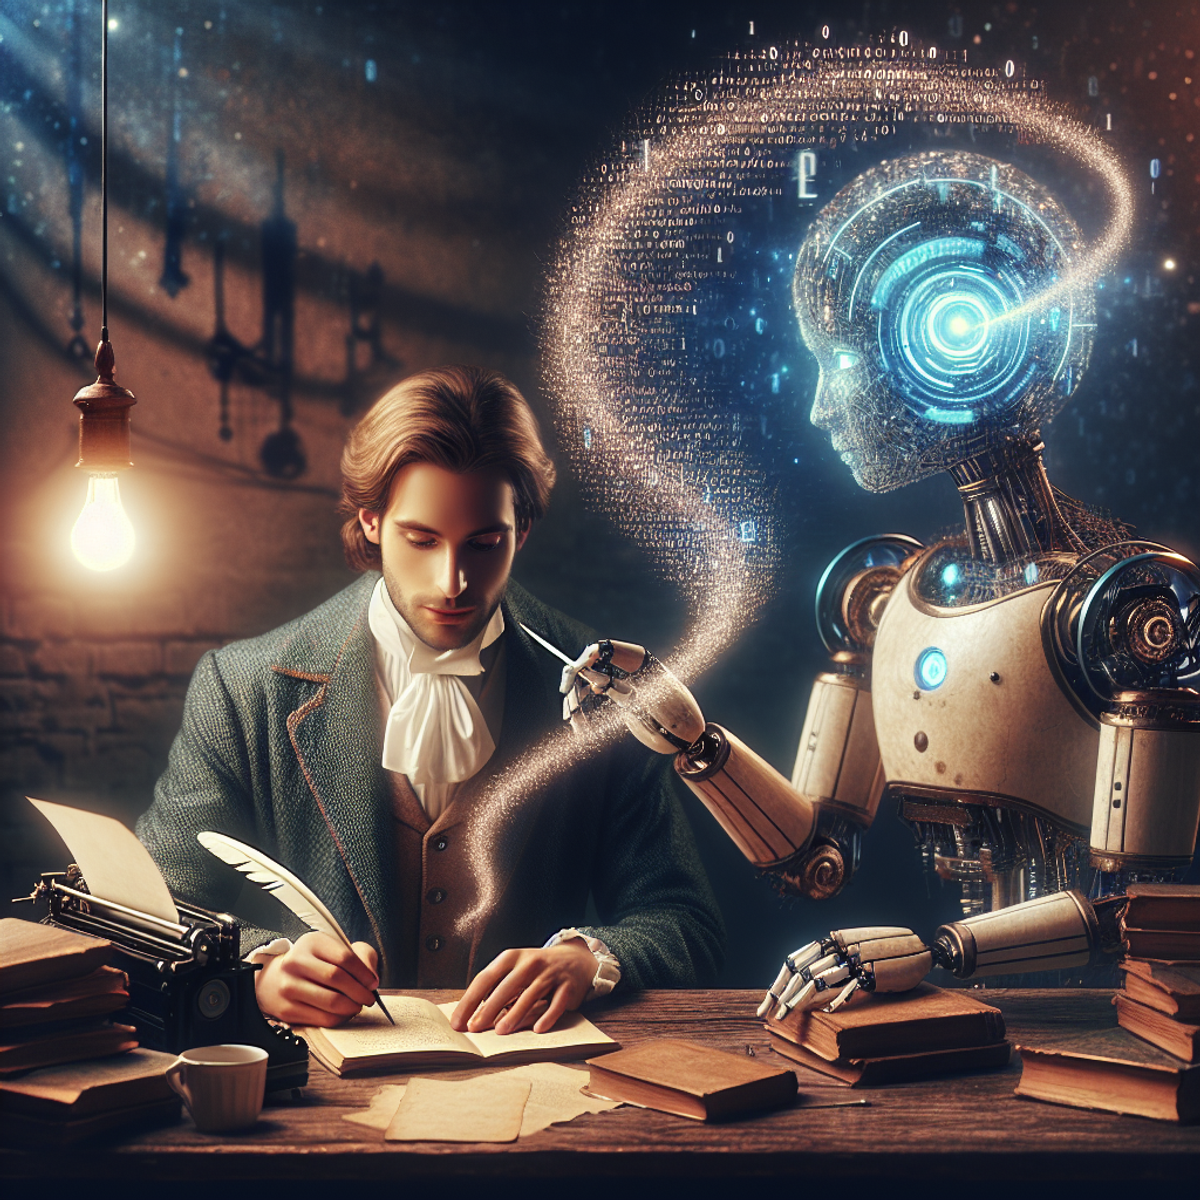 人間の作家が机に座り、羽ペンで書いている様子を描いたイメージです。一方、未来的なAIロボットは言葉のホログラフィックな画面を提示しています。